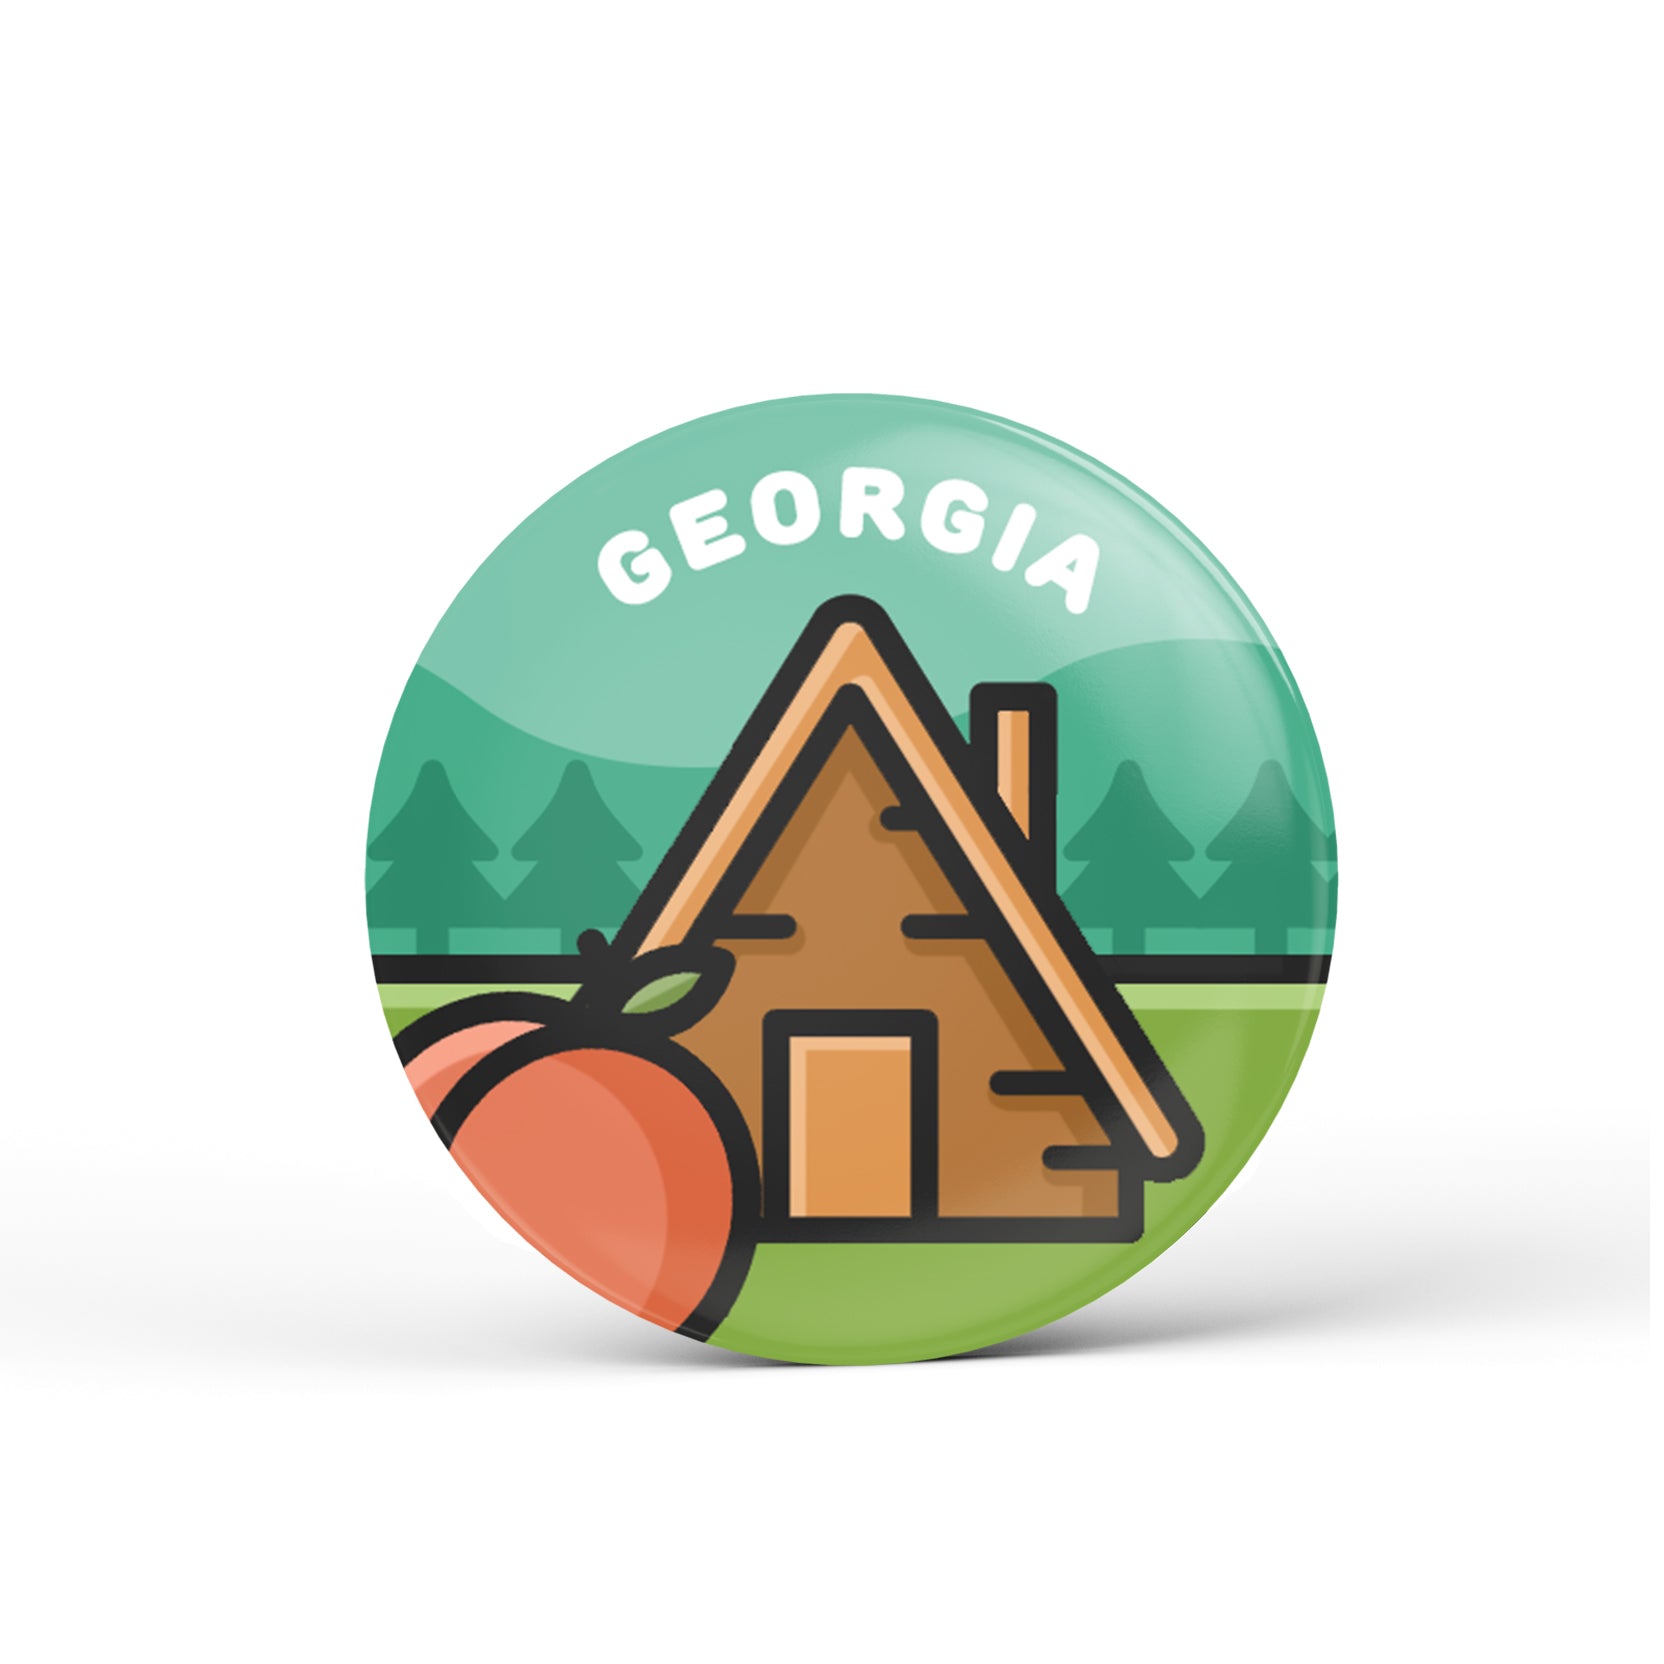 Georgia Button